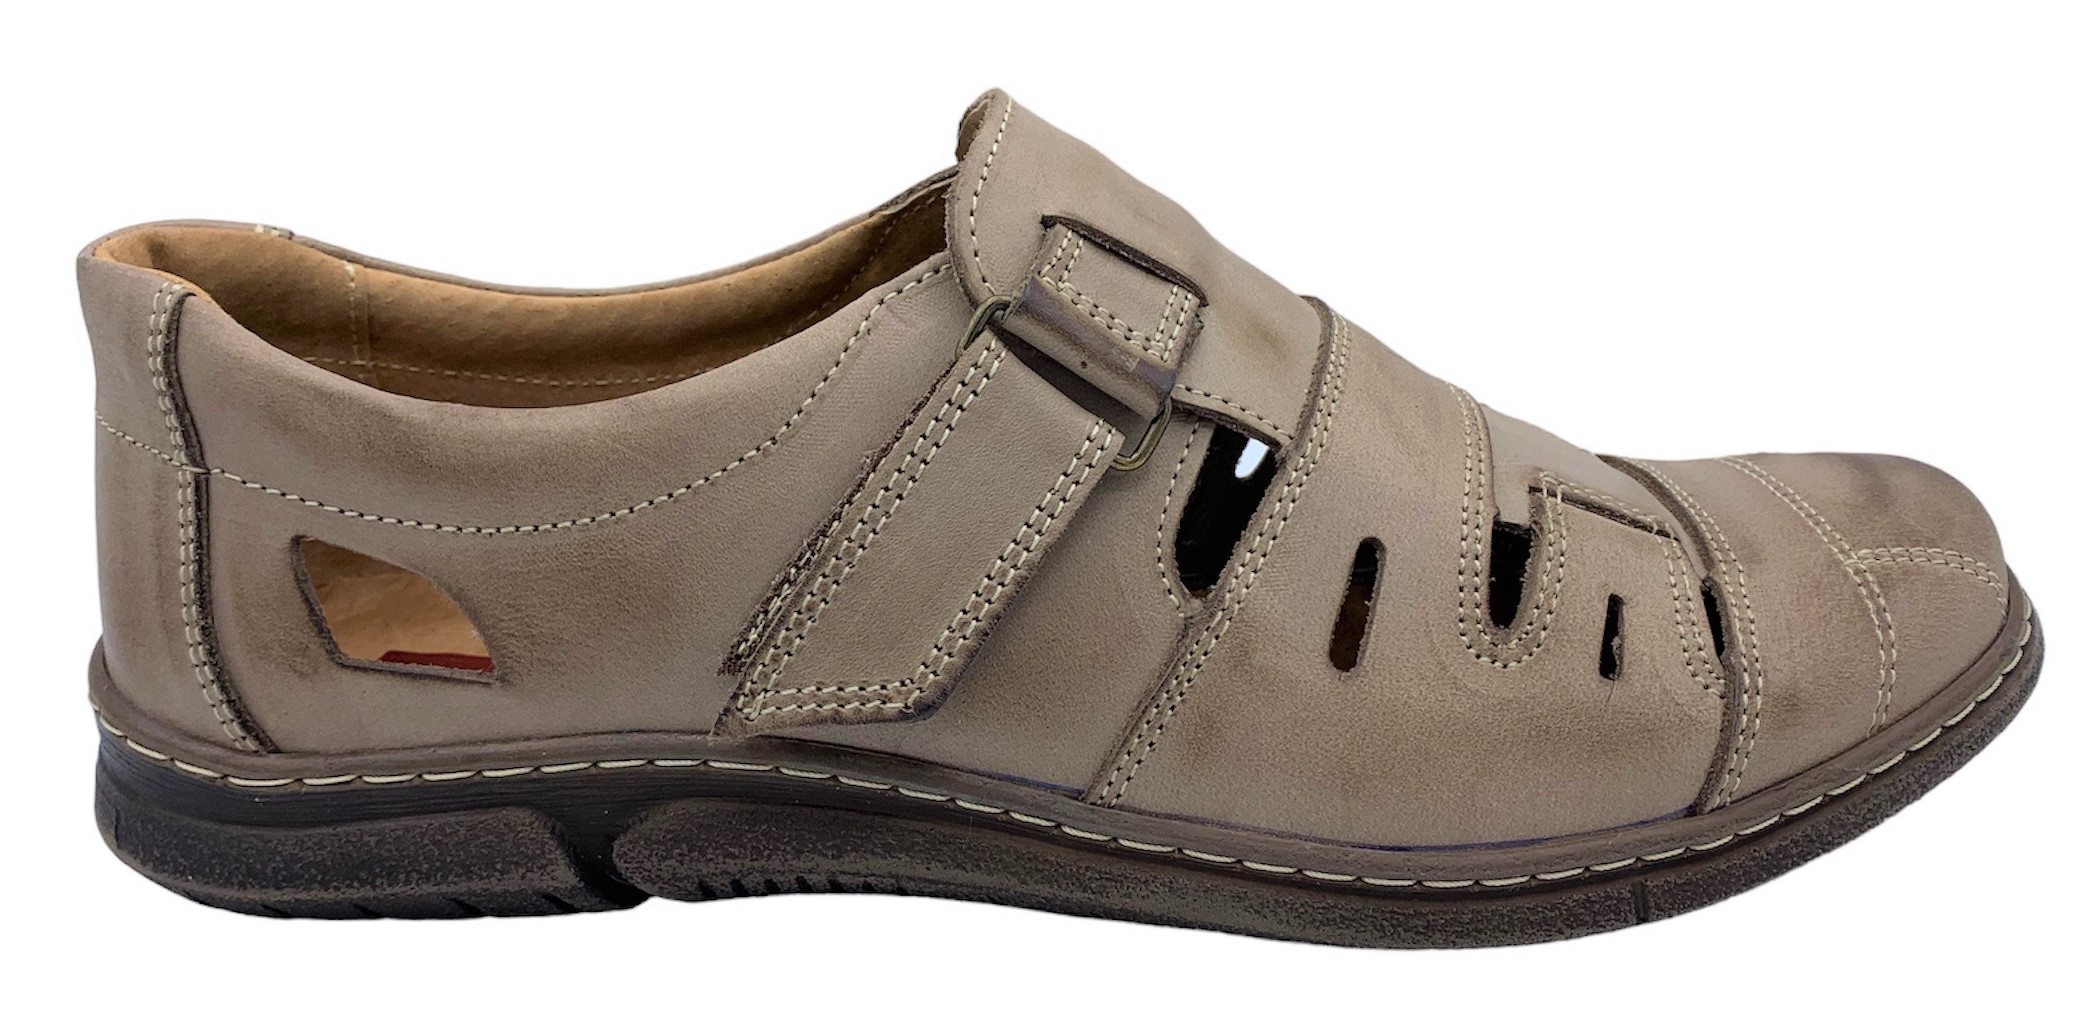 Pánská kožené sandále NES 4617 hnědé Velikost: 43 (EU)